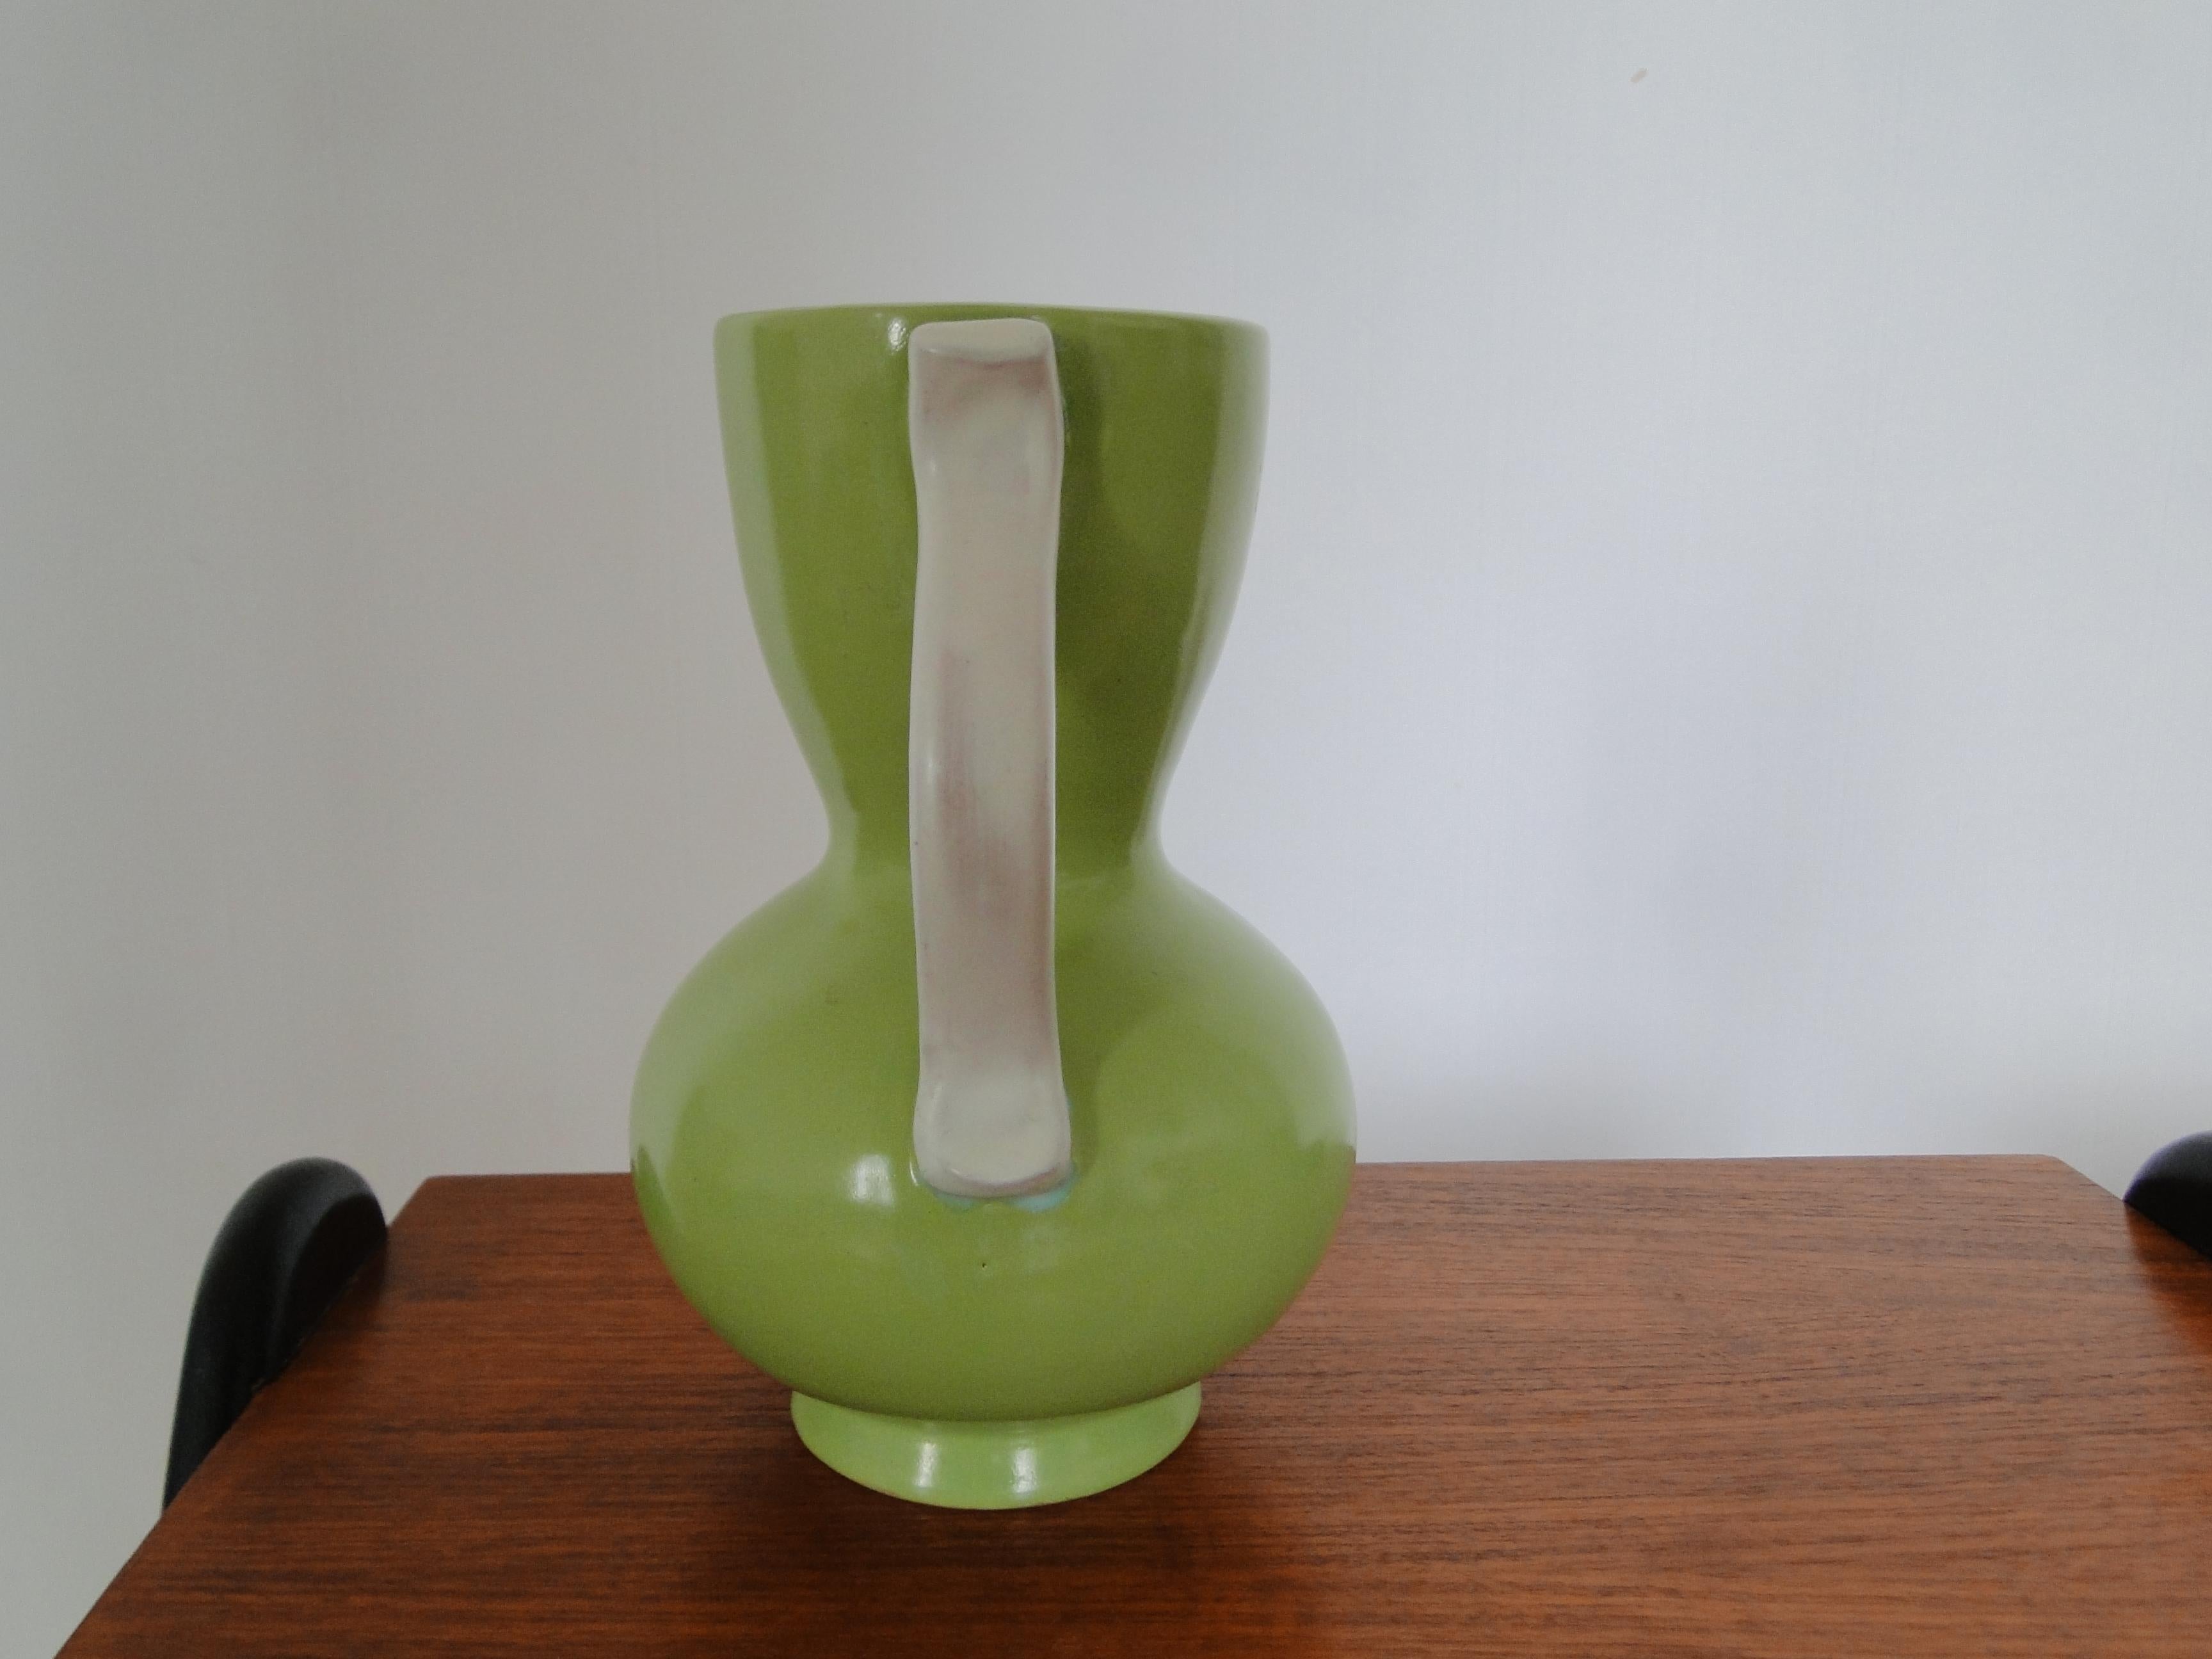 Un vase inhabituel du début de la période moderniste en amande verte et blanche. 

Conçu par Anna-Lisa Thomson, pour Upsala-Ekeby, Suède, 1940. Estampillé.

Très bon état.

Mesures : Hauteur : 20cm
Largeur : 16cm
Profondeur : 12 cm.

